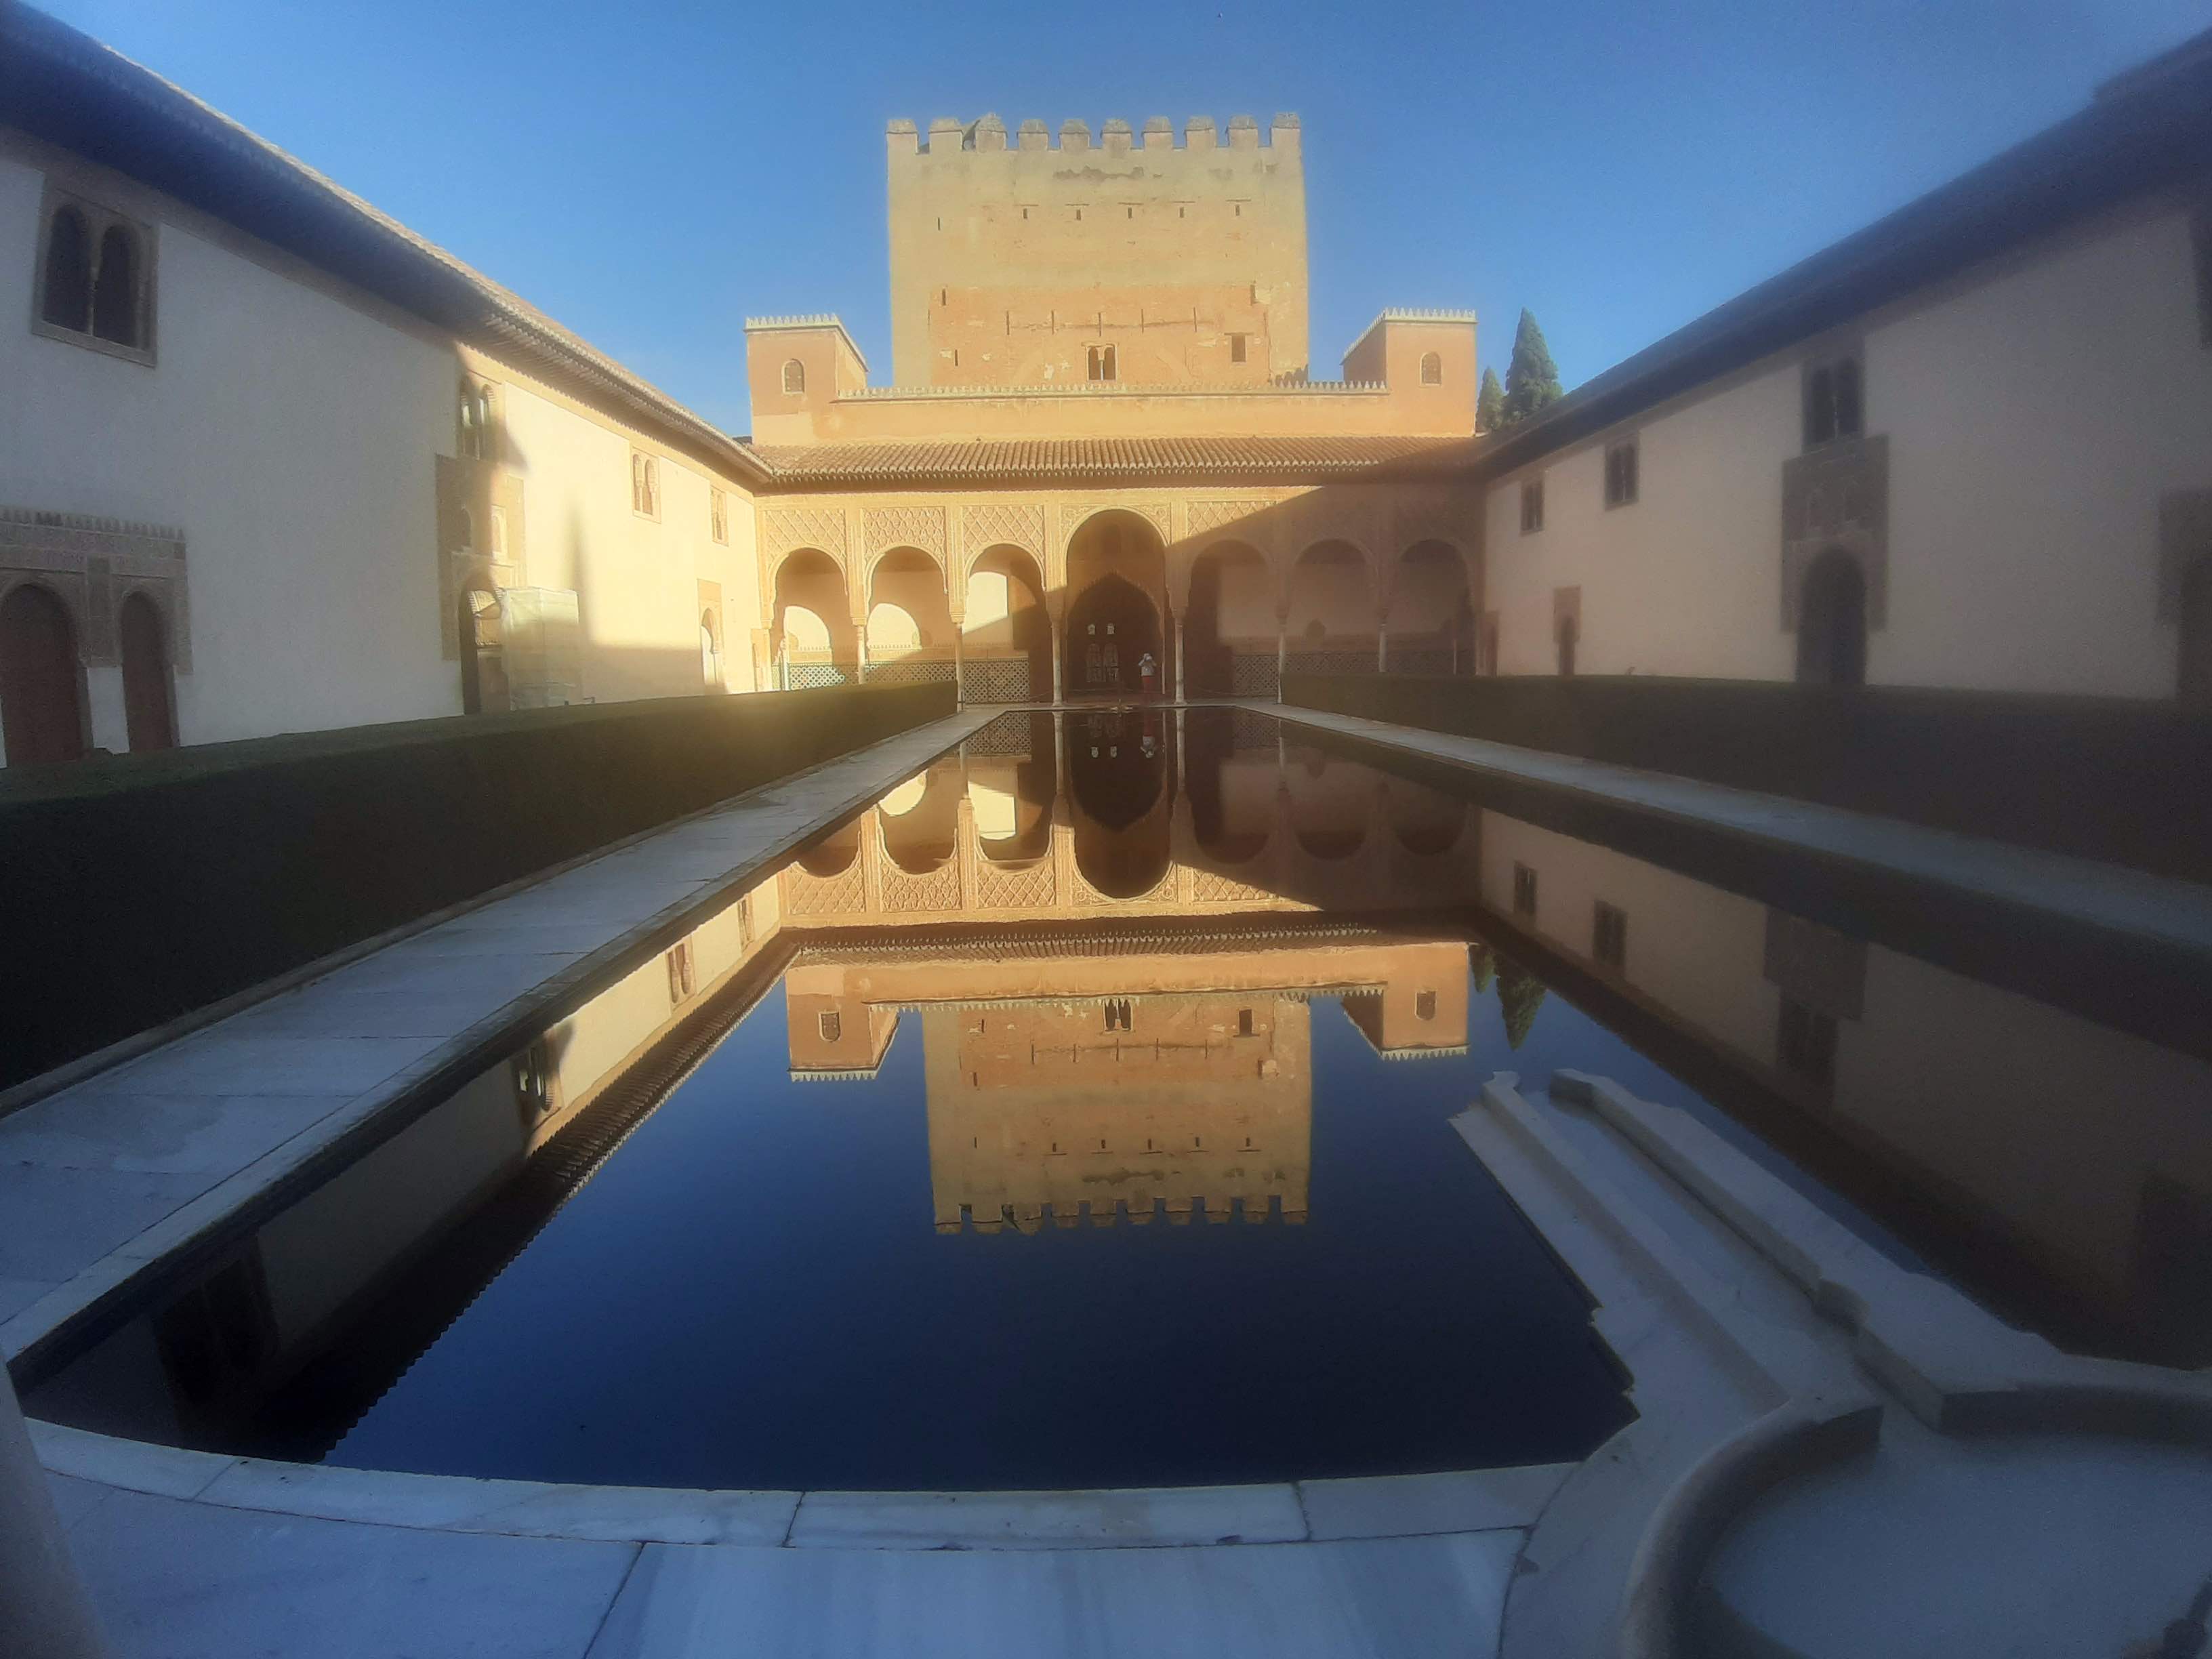 TOUR PRIVADO DE LA ALHAMBRA Y LOS JARDINES DEL GENERALIFE - Tour privado de la Alhambra y los jardines del Generalife - desde 335.00 €  